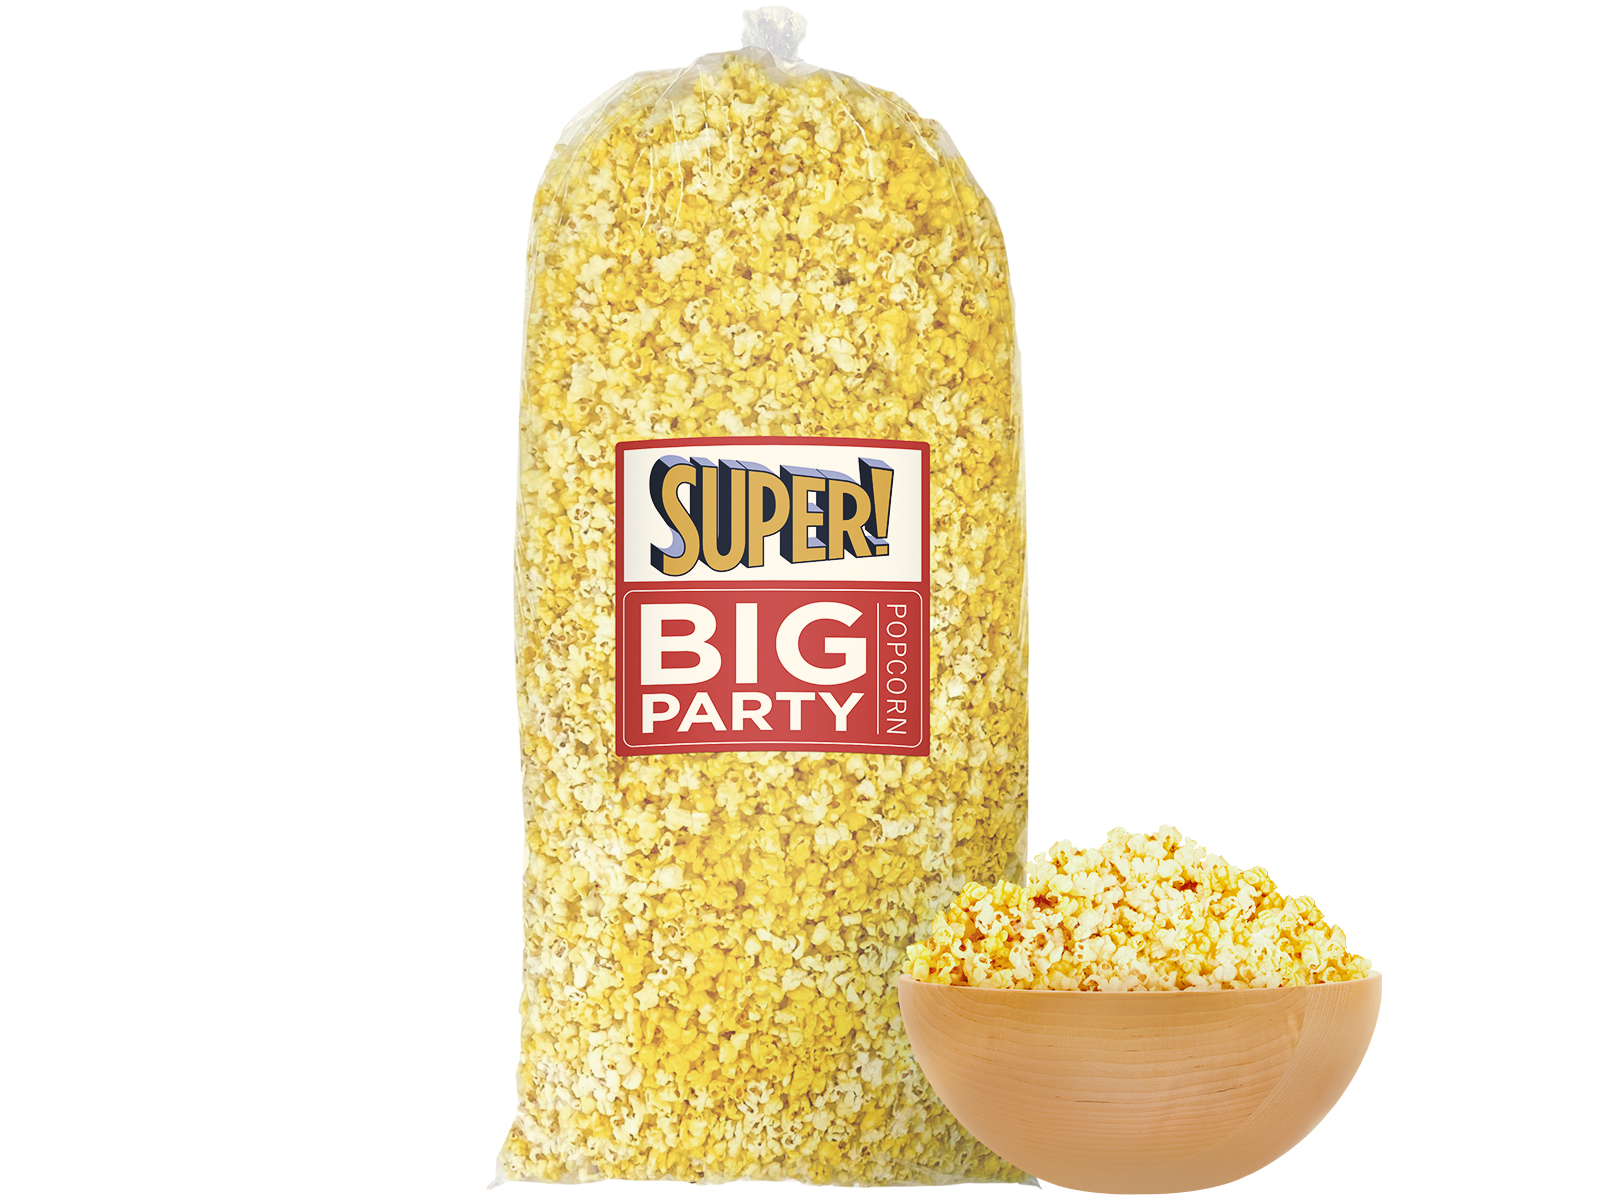 Order Super Big Party Popcorn food online from Harkins Theatres Cerritos 16 store, Cerritos on bringmethat.com